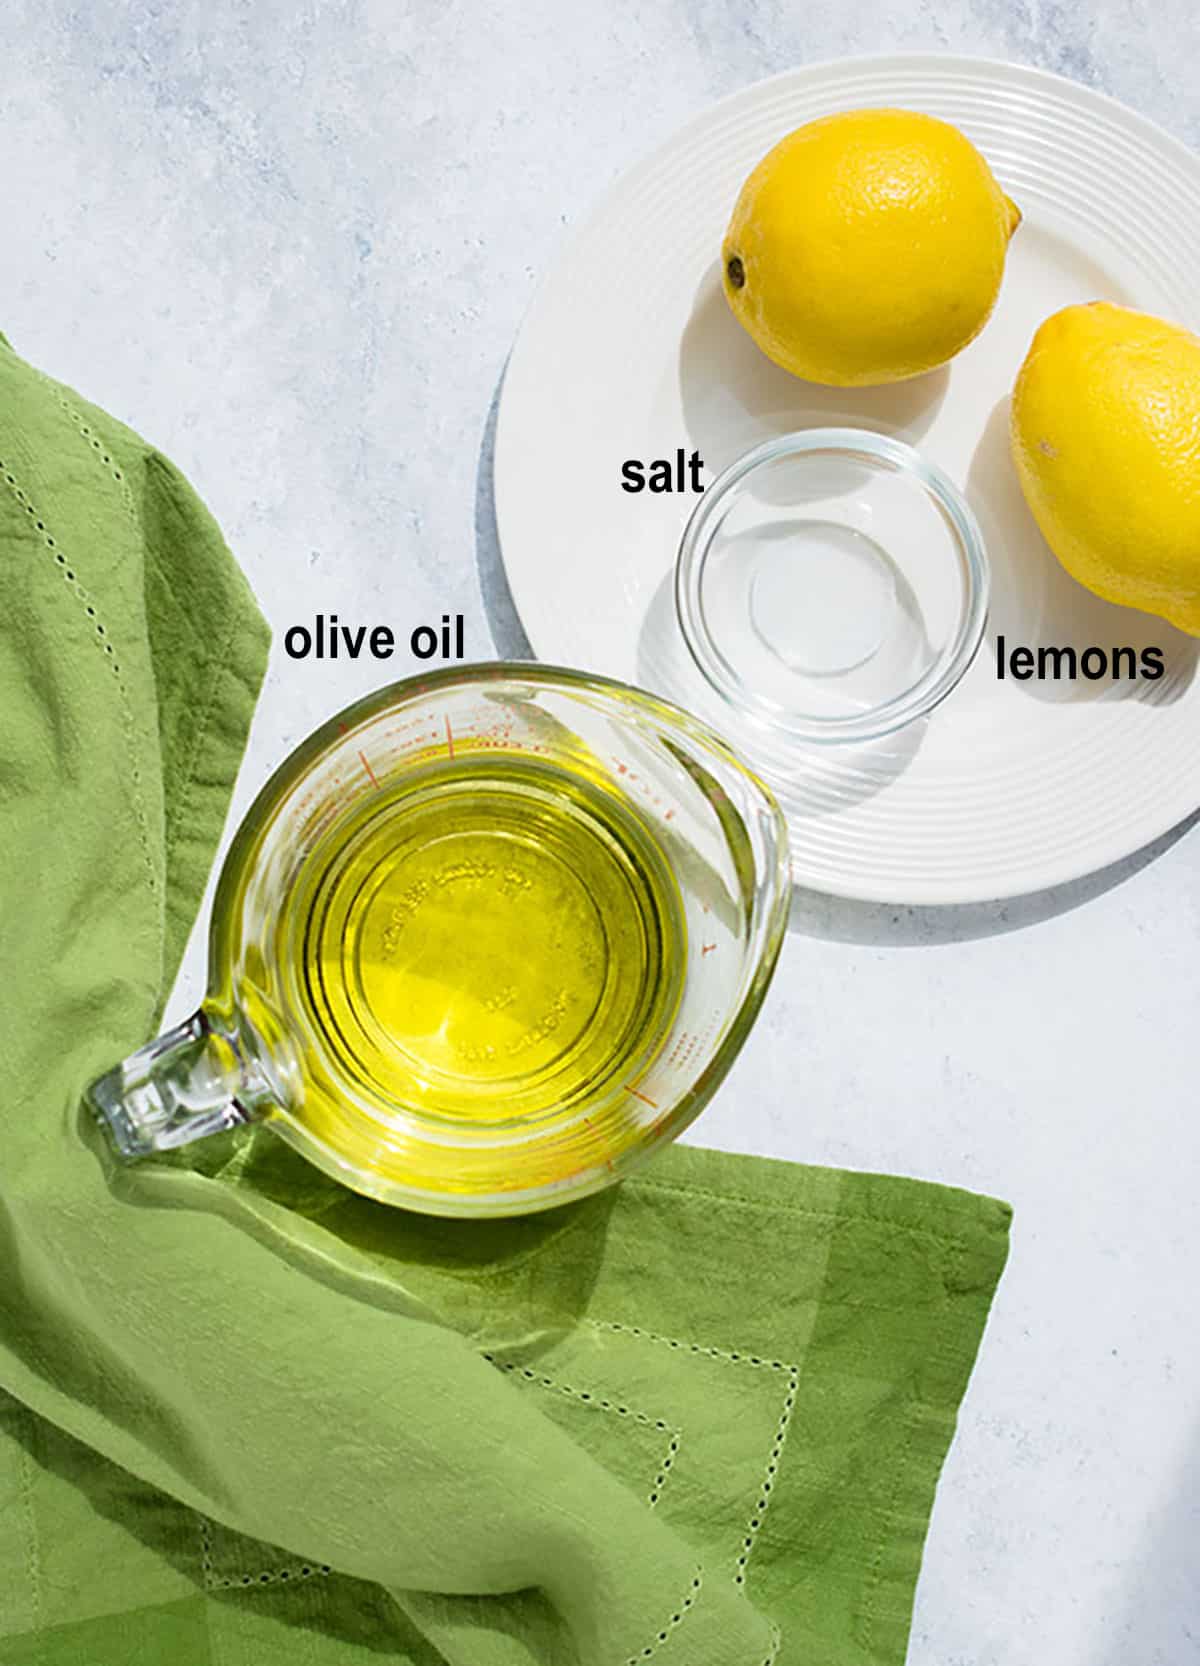 salt, olive oil, lemons